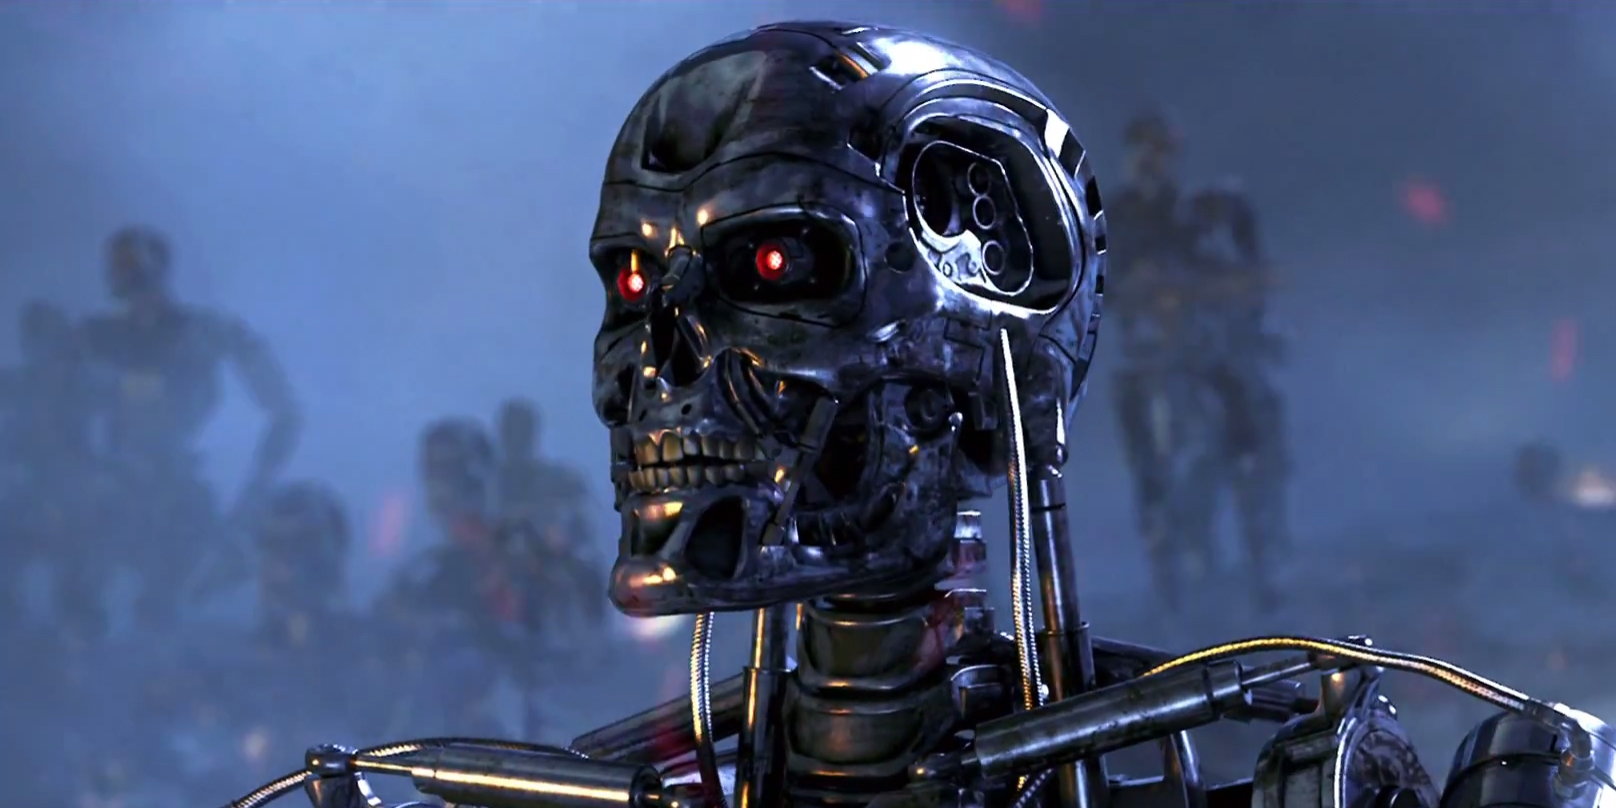 الروبوتات القاتلة... تكنولوجيا حديثة تهدد مستقبل البشرية!